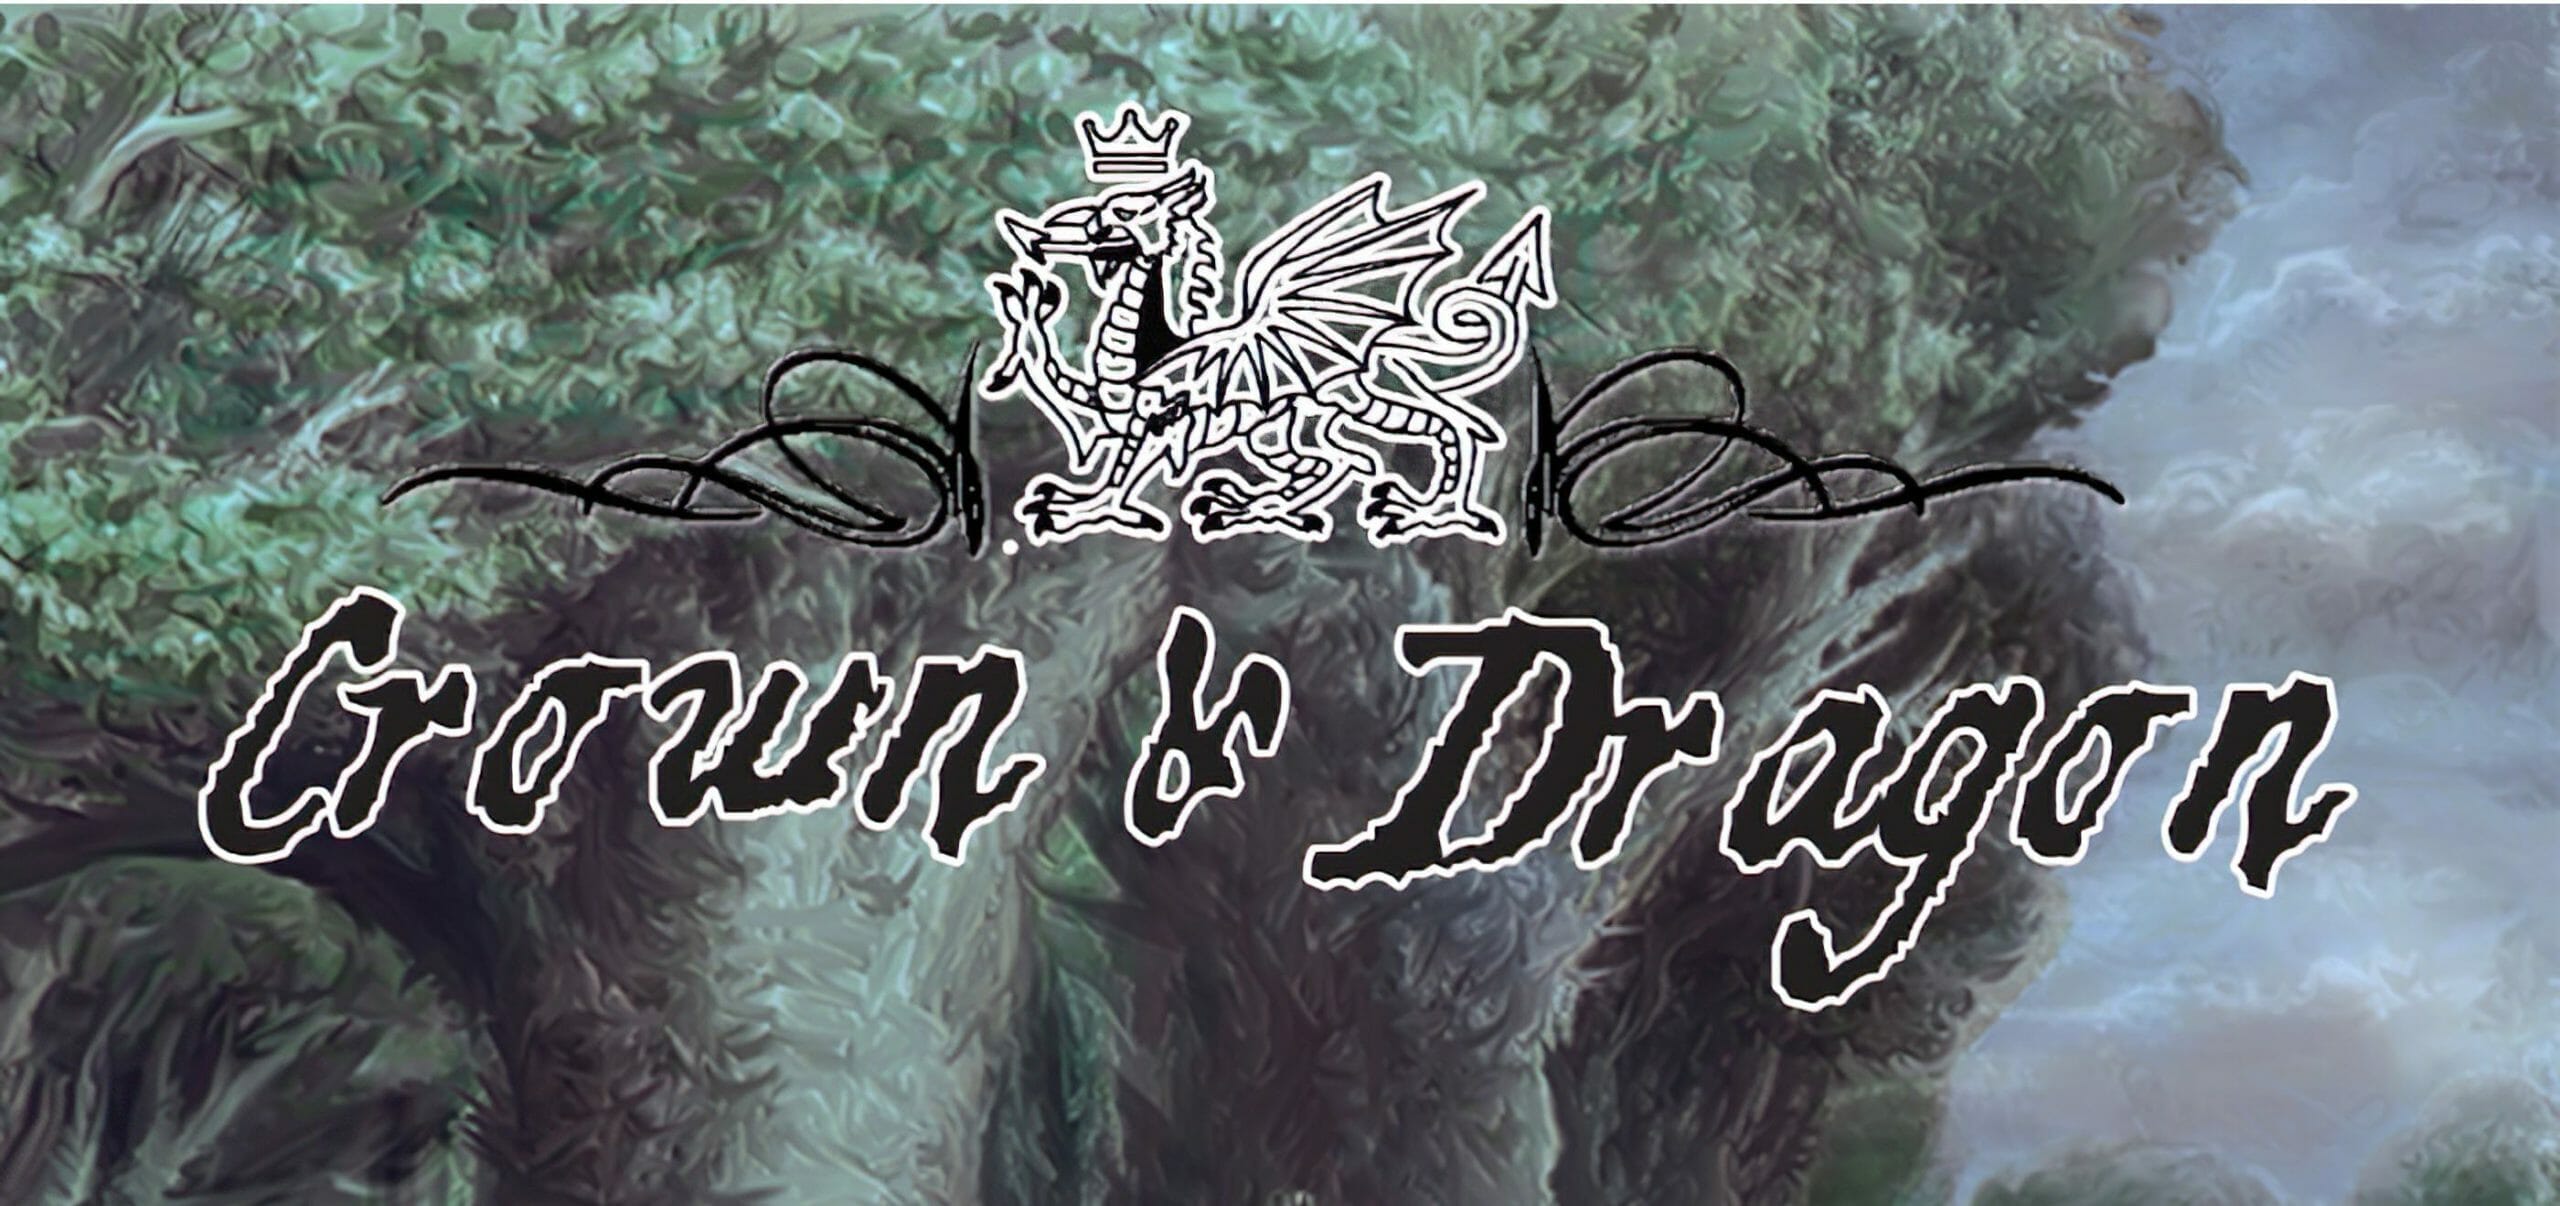 download crown dragon